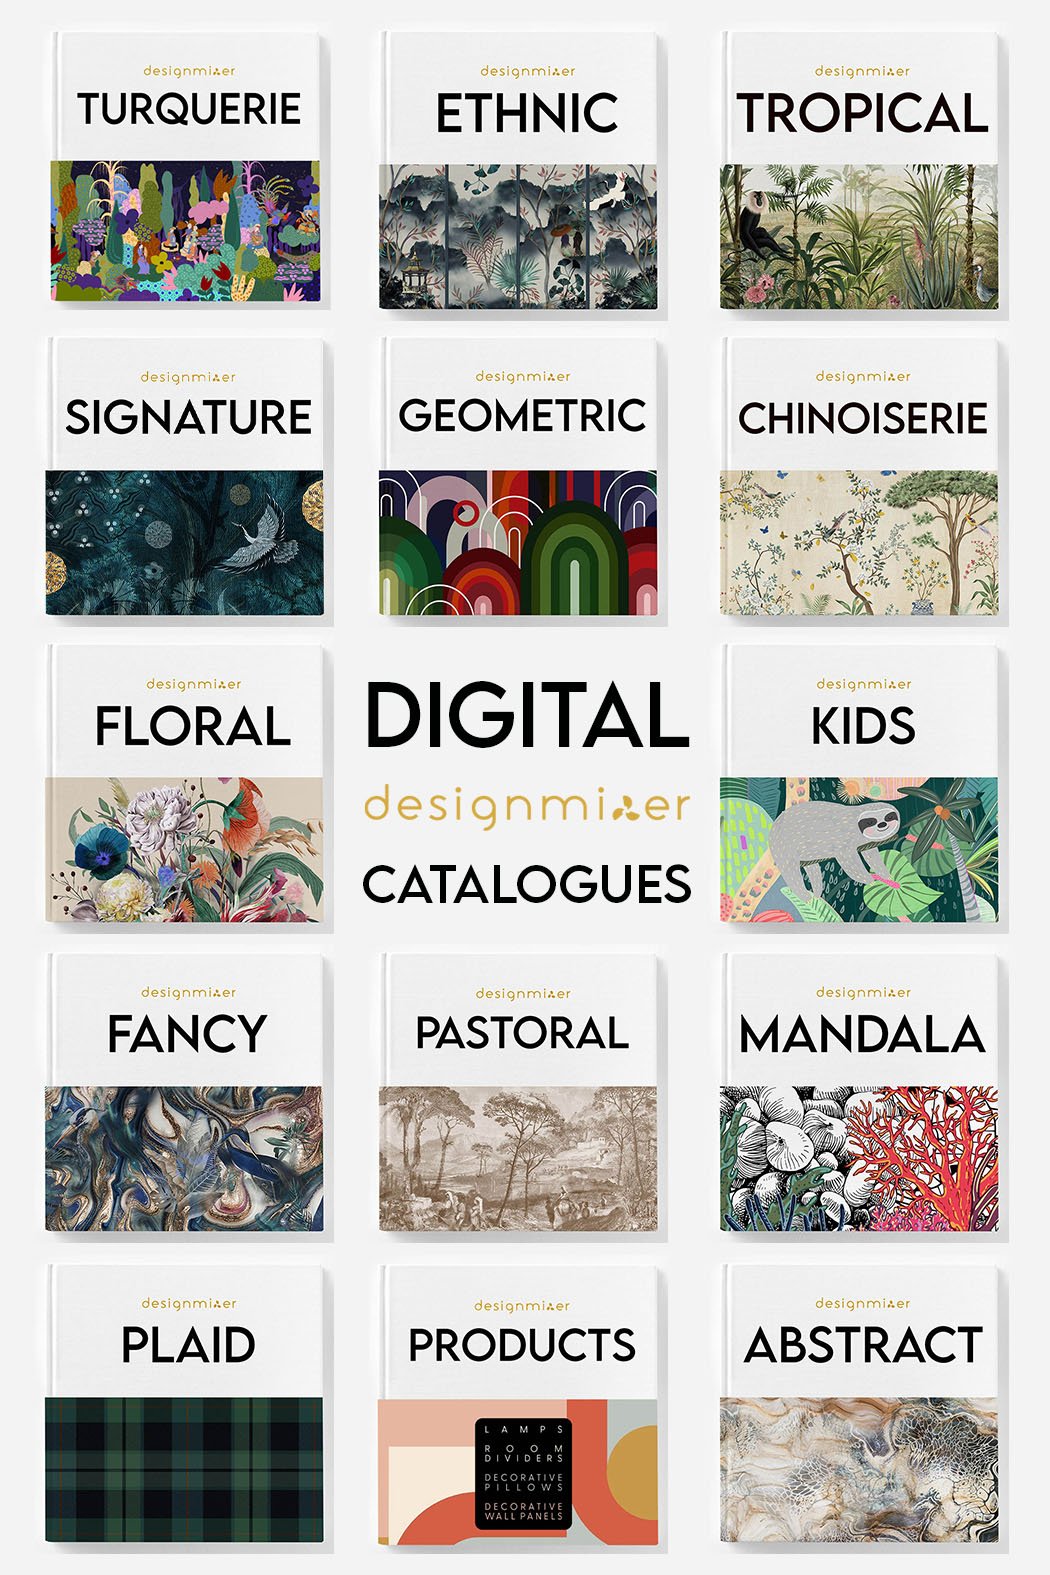 Digital catalogues